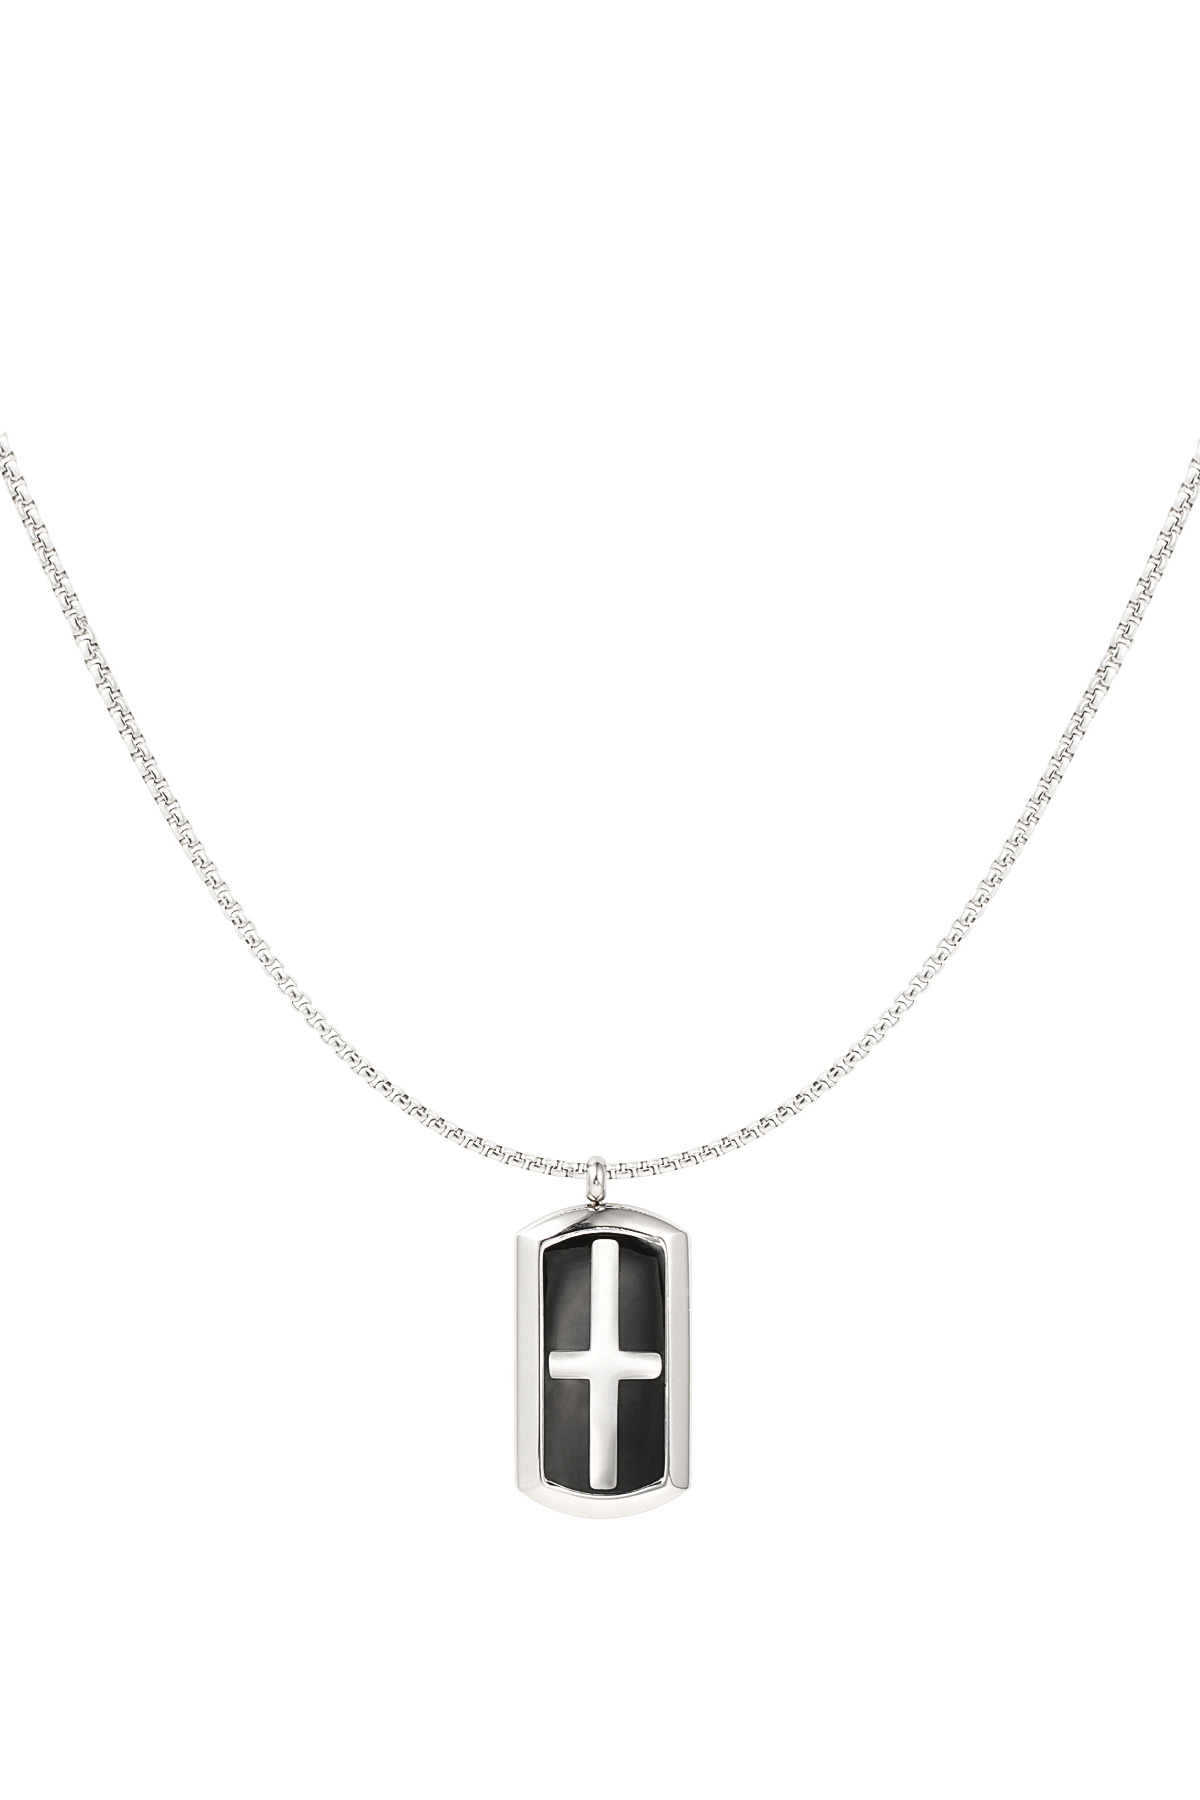 Herrenhalskette mit rechteckigem Kreuzanhänger – Silber/Schwarz